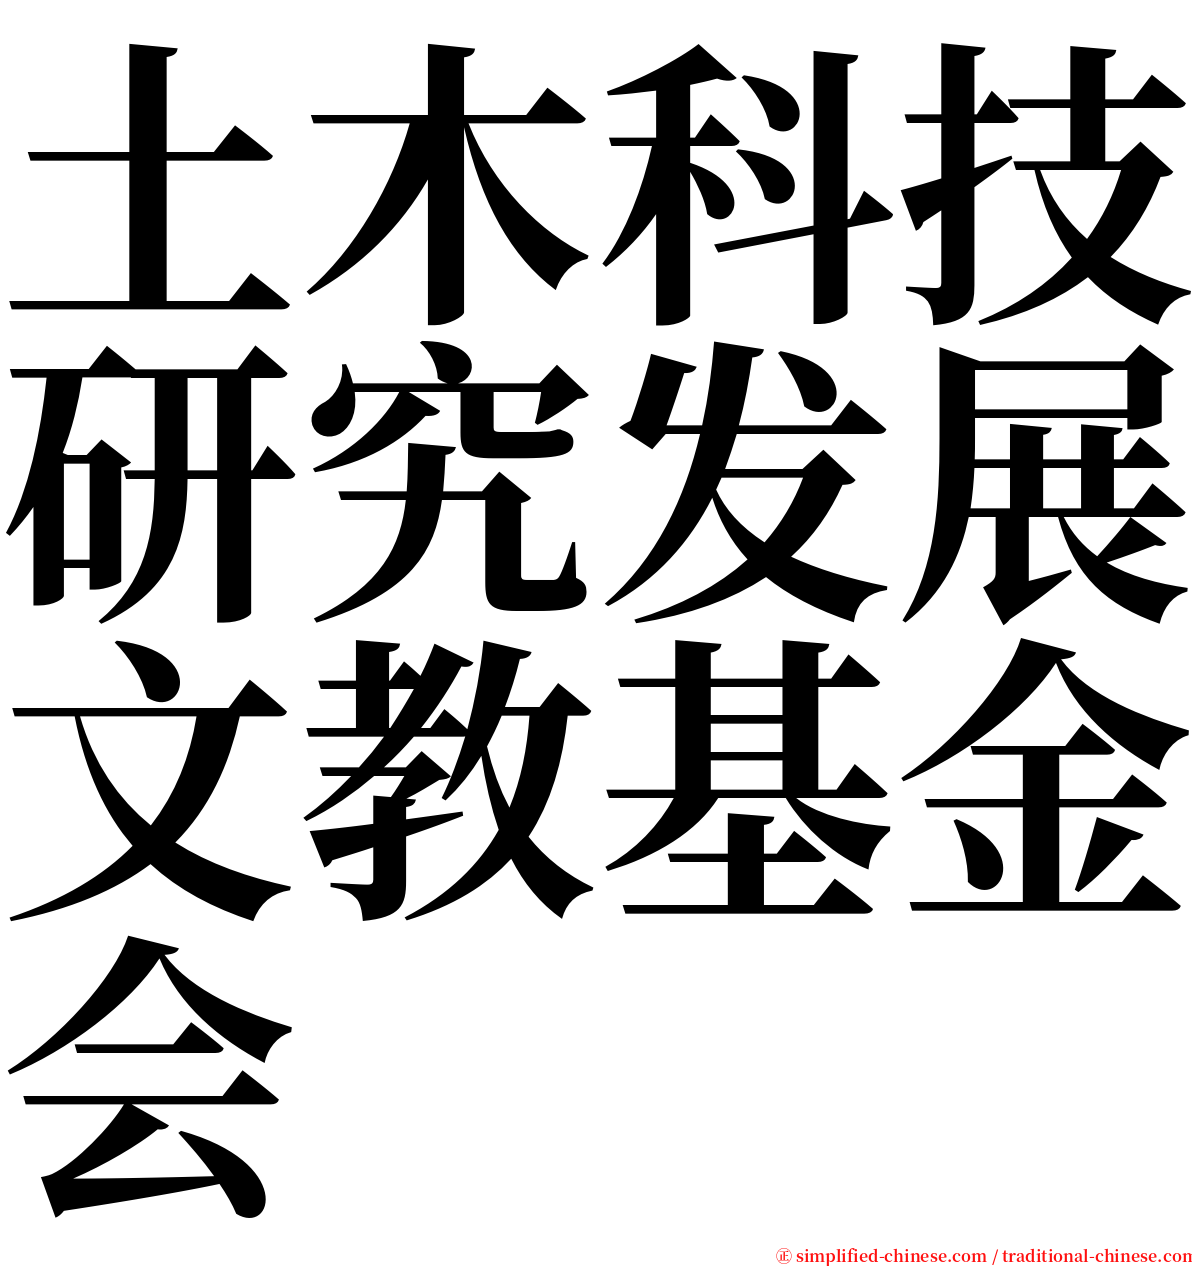 土木科技研究发展文教基金会 serif font